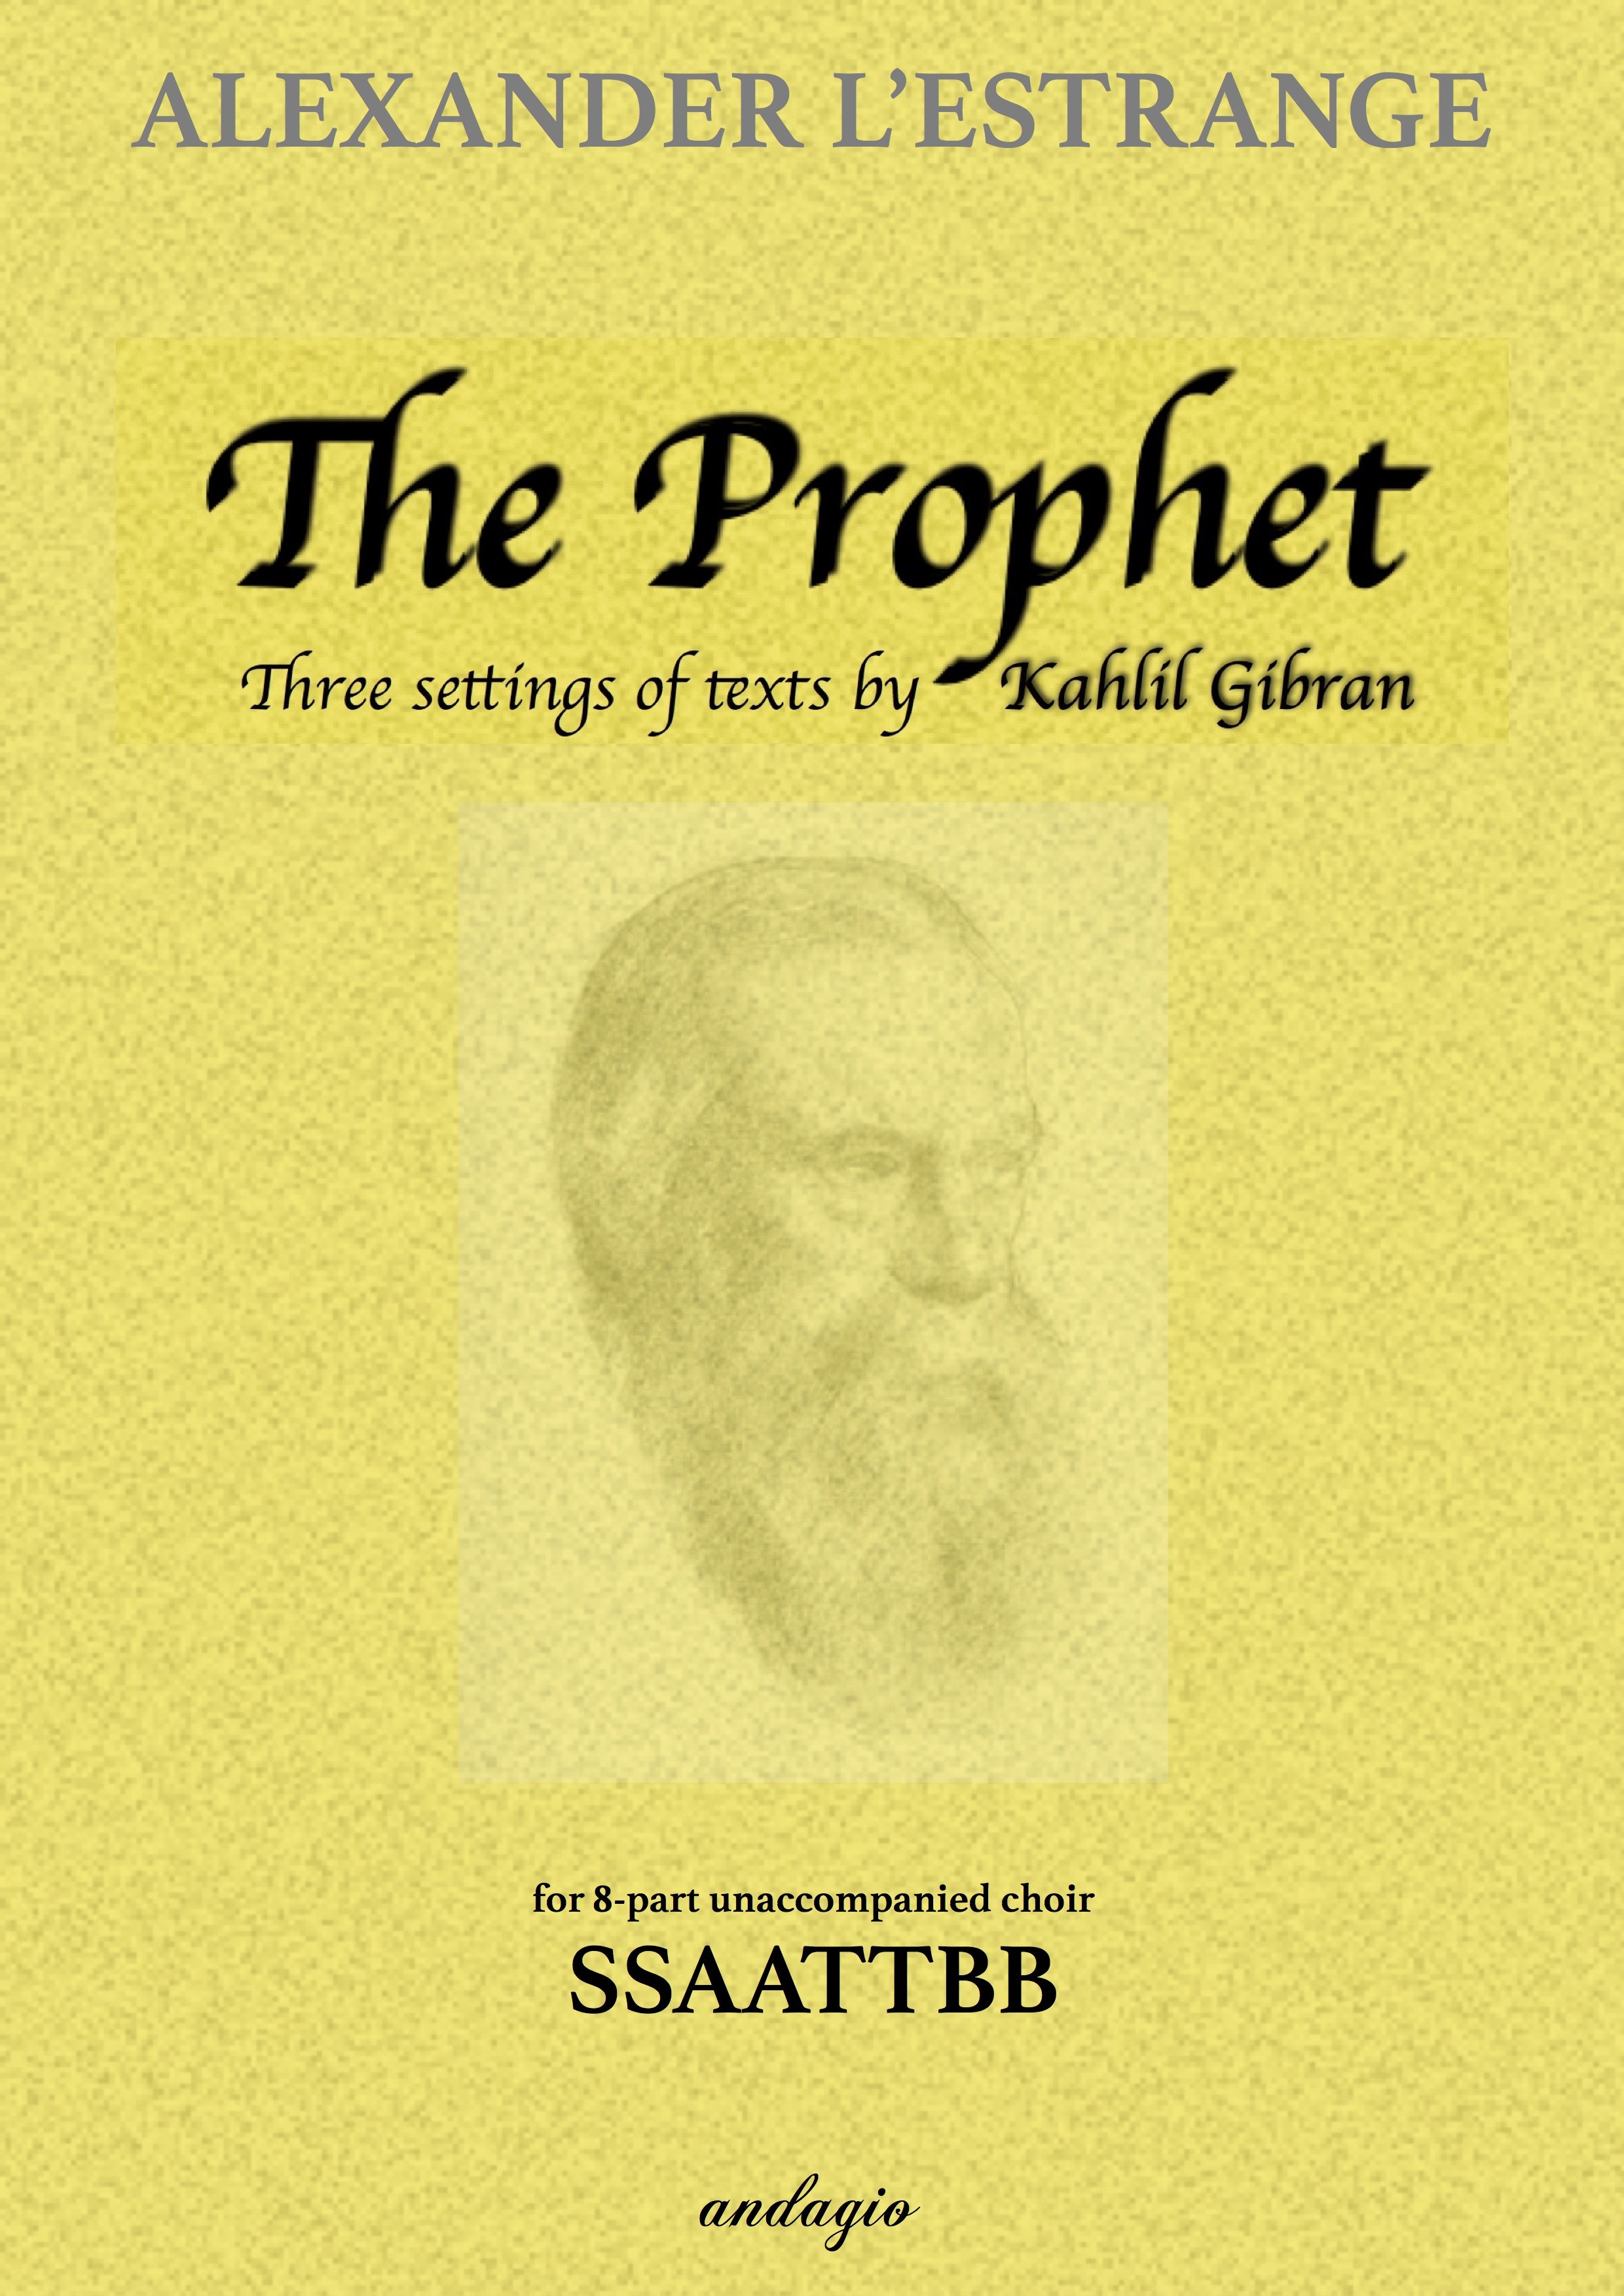 The Prophet COVER.jpg